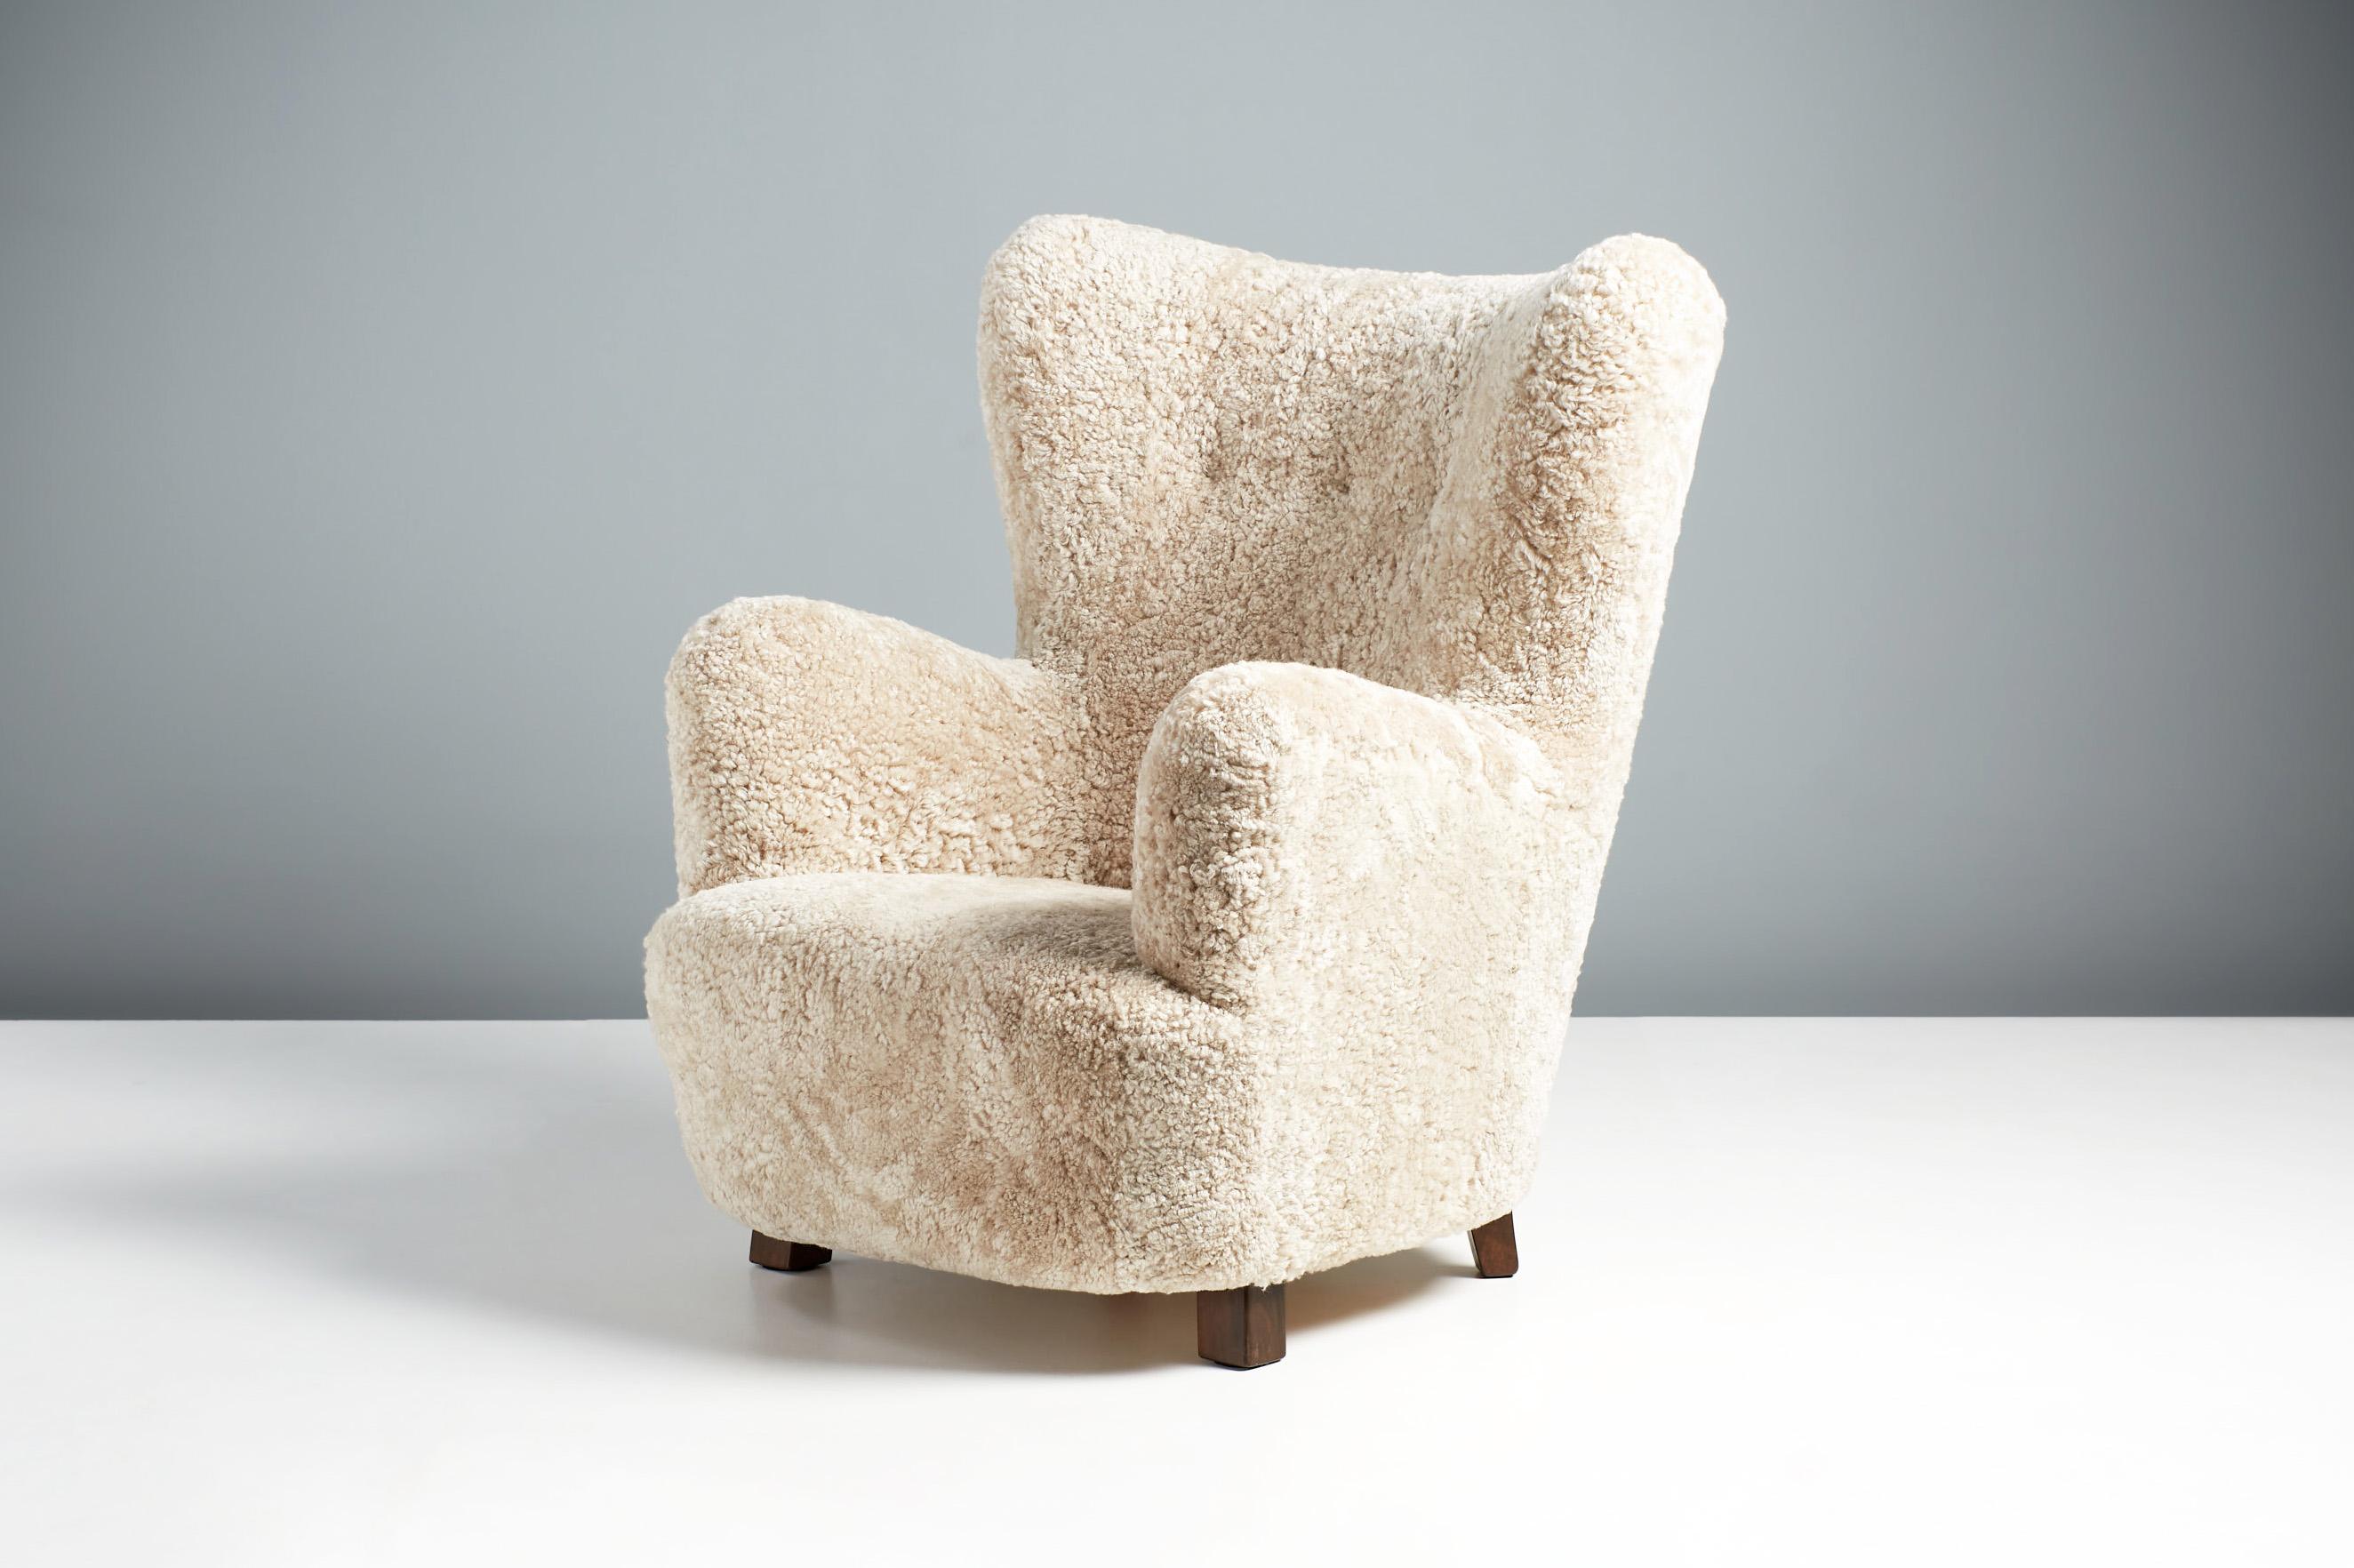 Fauteuil en peau de mouton d'ébéniste danois, vers 1940.

Cette grande chaise longue a été fabriquée par un ébéniste danois dans les années 1940 et est typique des chaises longues danoises de l'époque. Il est doté d'un dossier à oreilles incurvé et